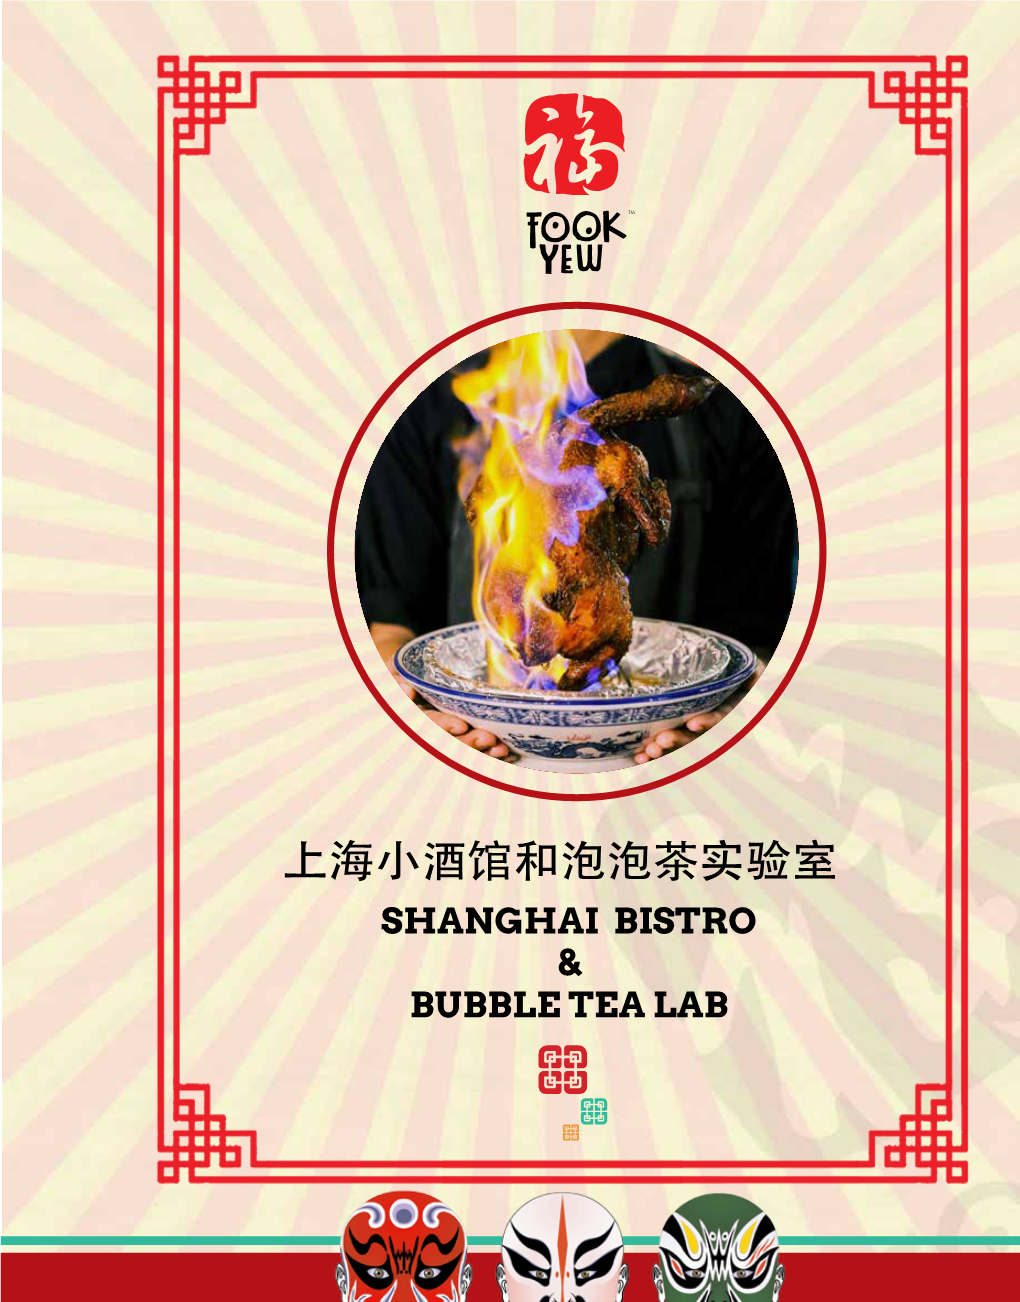 上海小酒馆和泡泡茶实验室 SHANGHAI BISTRO & BUBBLE TEA LAB S 虾鸡肉生煎包 K Shanghai Chicken & Prawn 68 Sheng Jian Bao 6 Pcs Sheng Jian Bao Isi Ayam & Udang